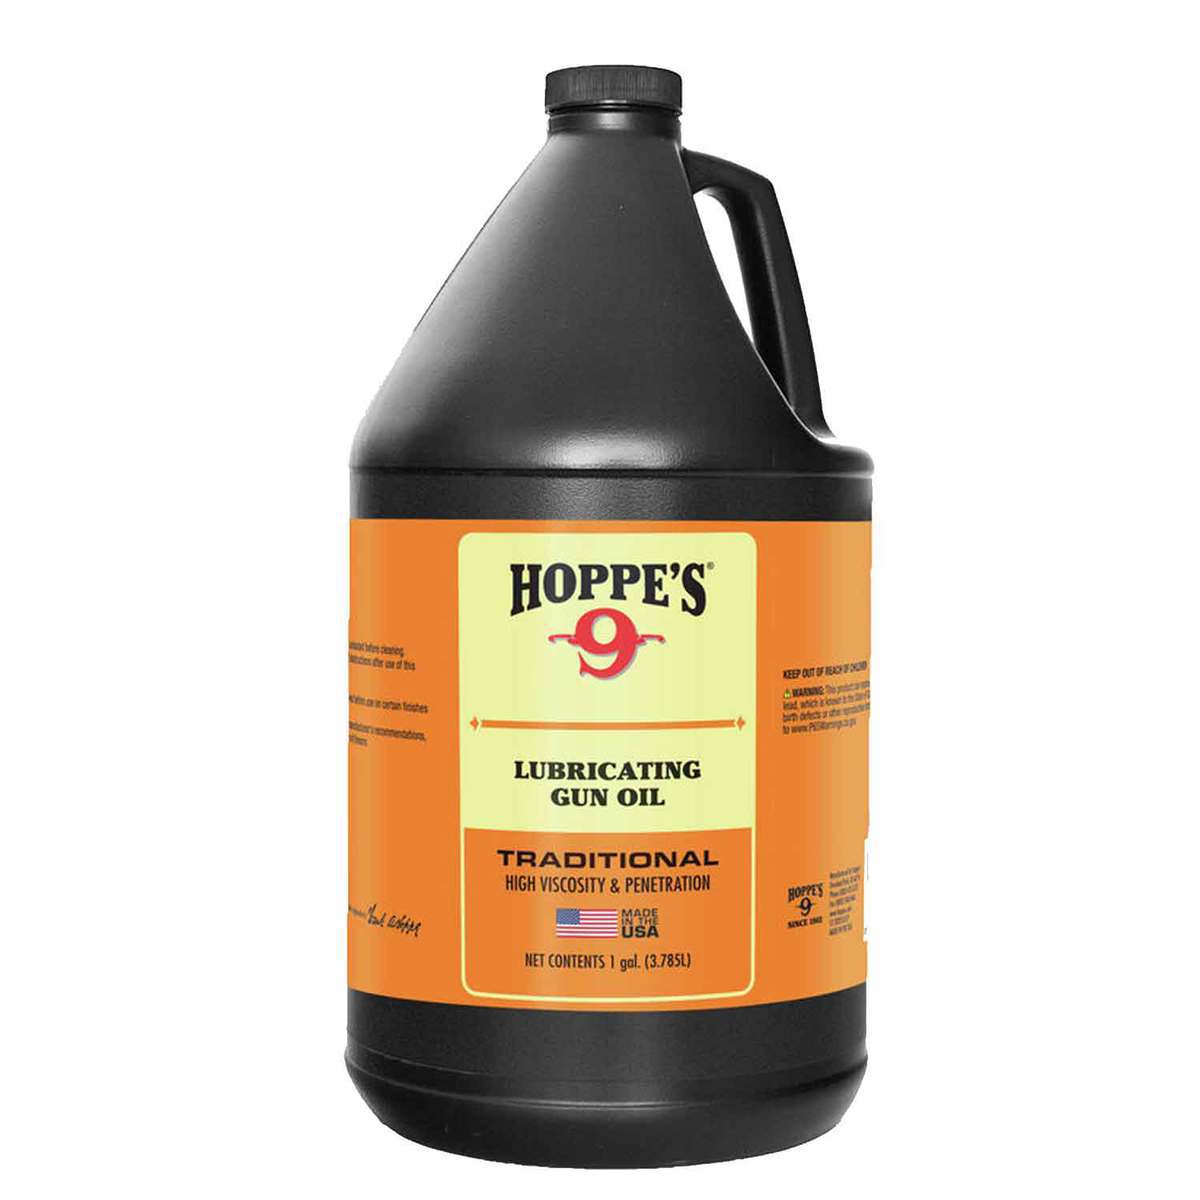 Buy Intimus Shredder Oil - 1 Gallon Bottles (4pk) (78839)